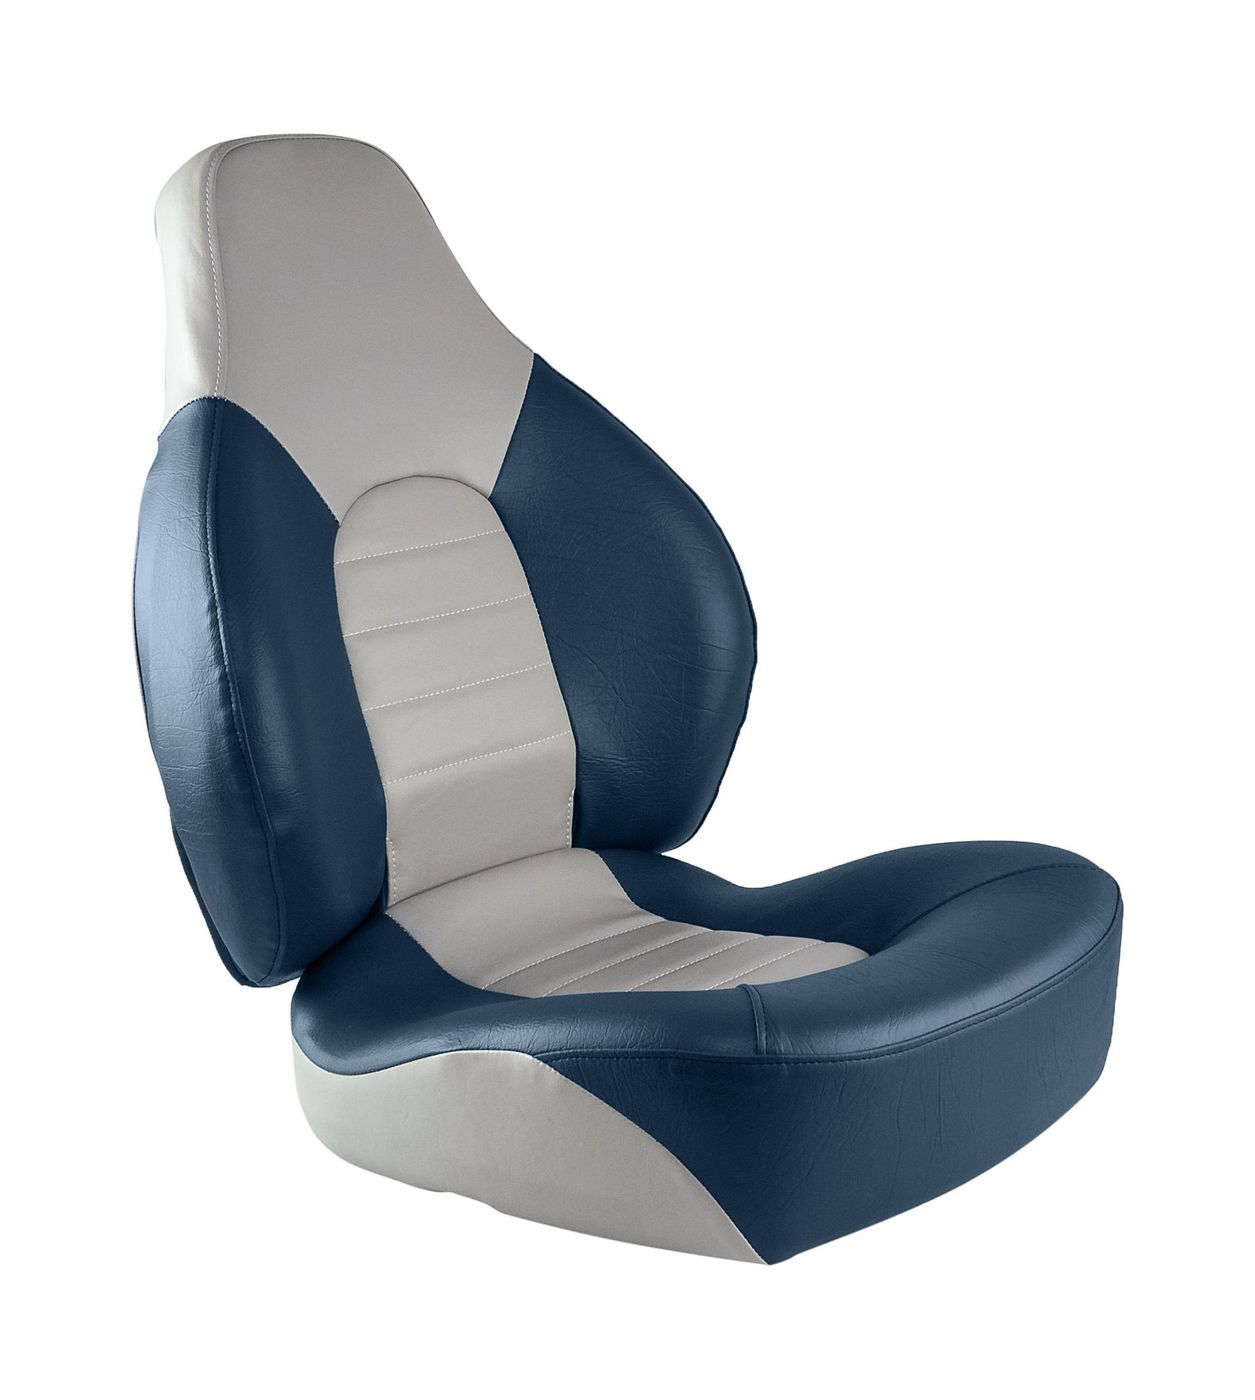 Кресло складное мягкое FISH PRO, цвет серый/синий 1041631 кресло складное мягкое skipper серый синий 1061019